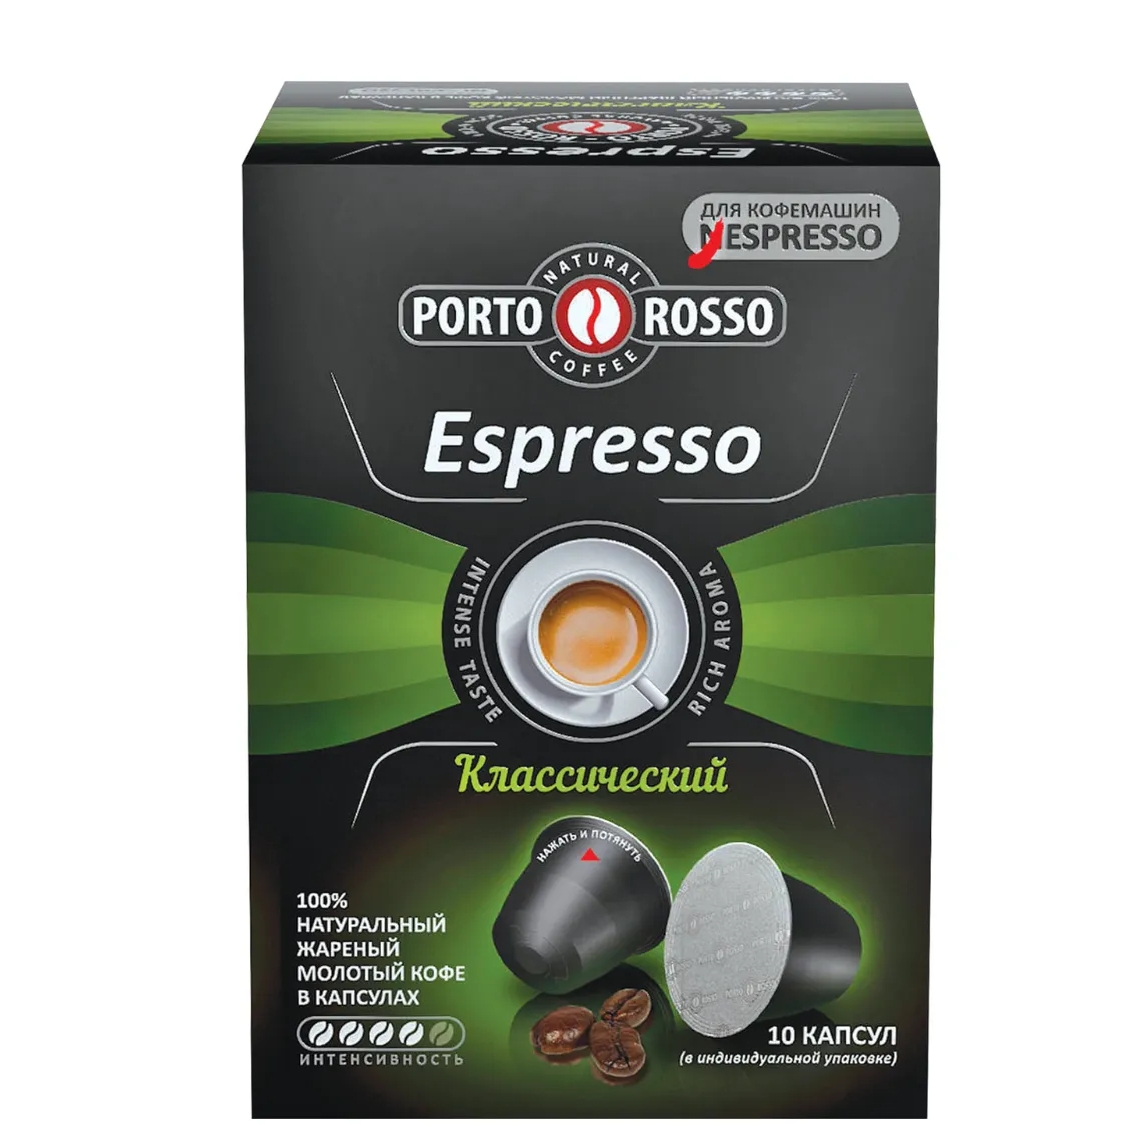 Кофе в капсулах Porto Rosso Espresso Классический, 10х5 г кофе в капсулах l or espresso forza 10х52 г